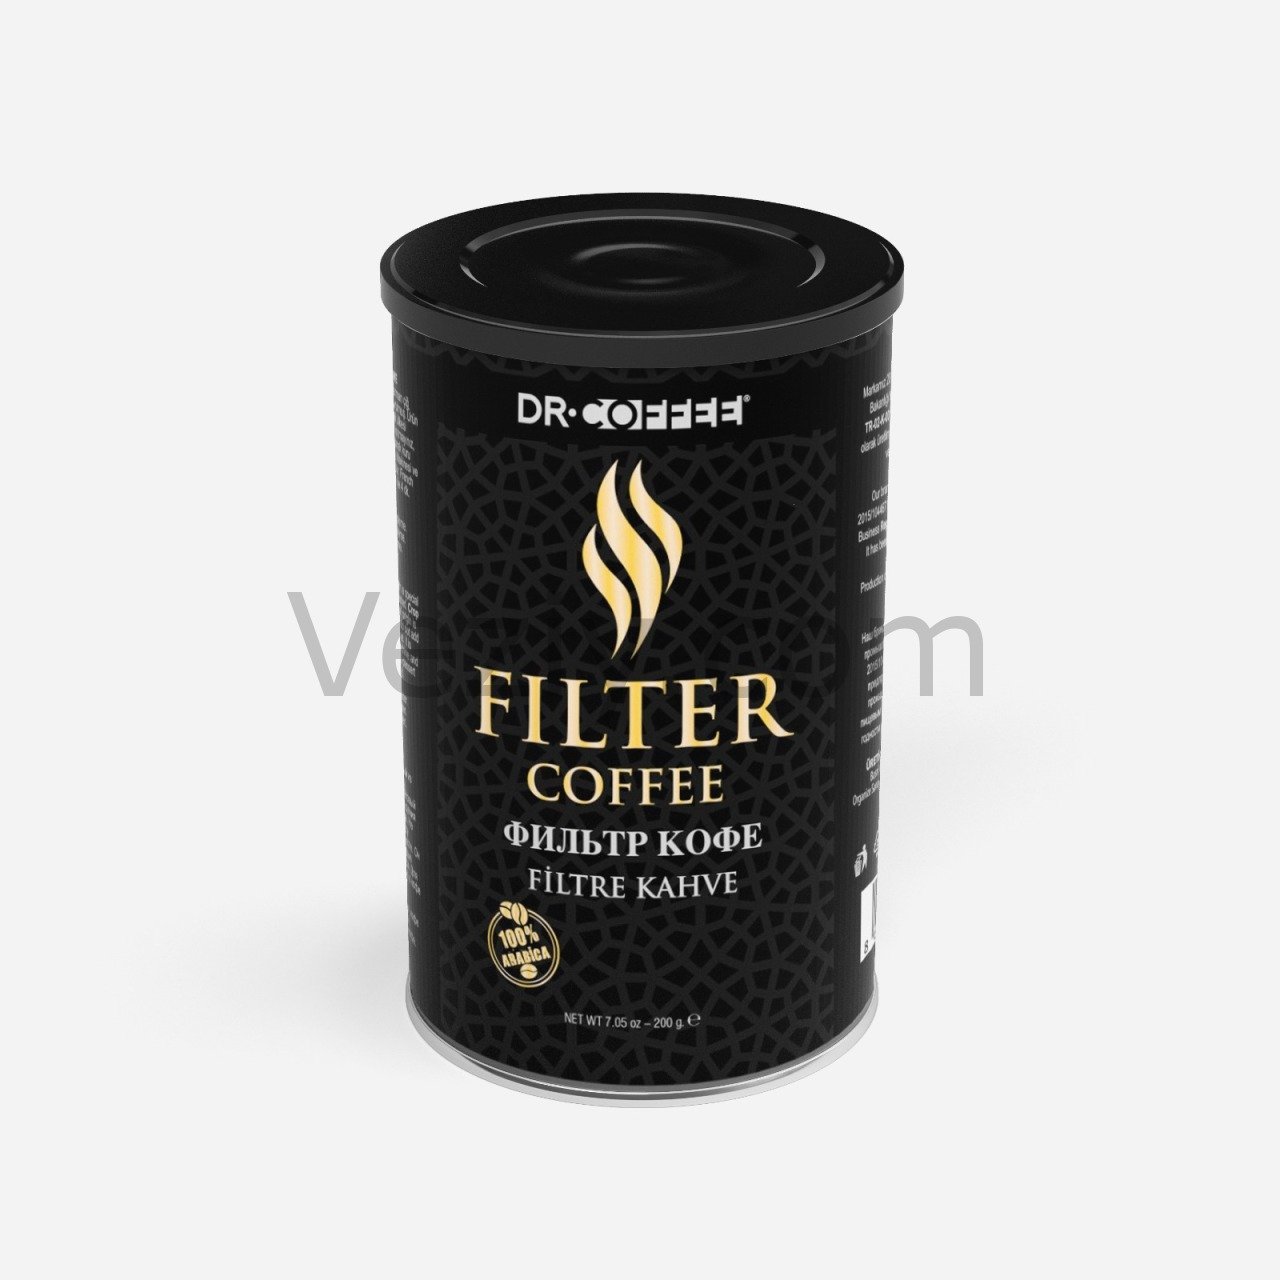 Filtre Kahve 200 Gr